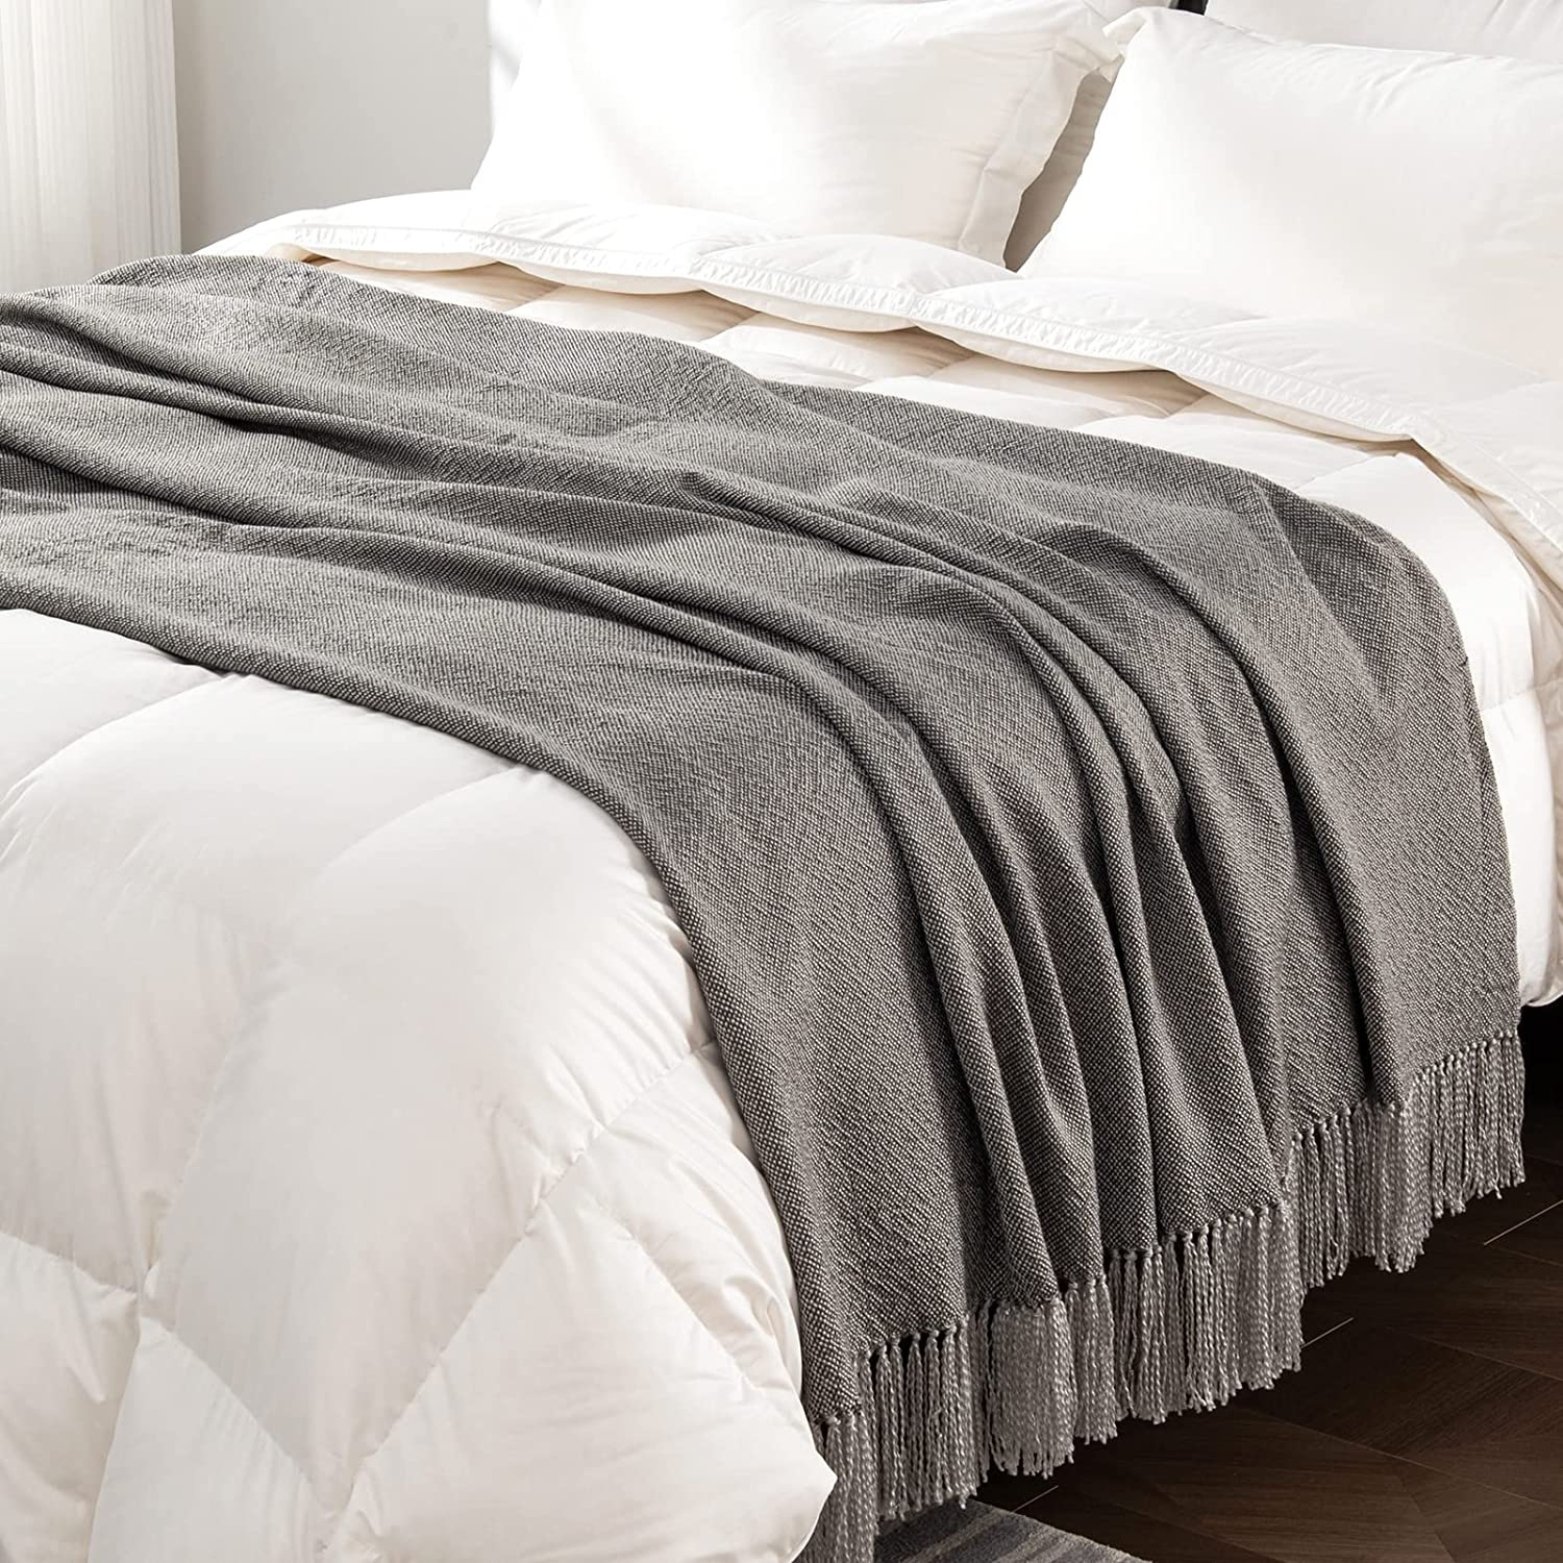 Grey Herringbone Throw Blanket with Tassels.jpg